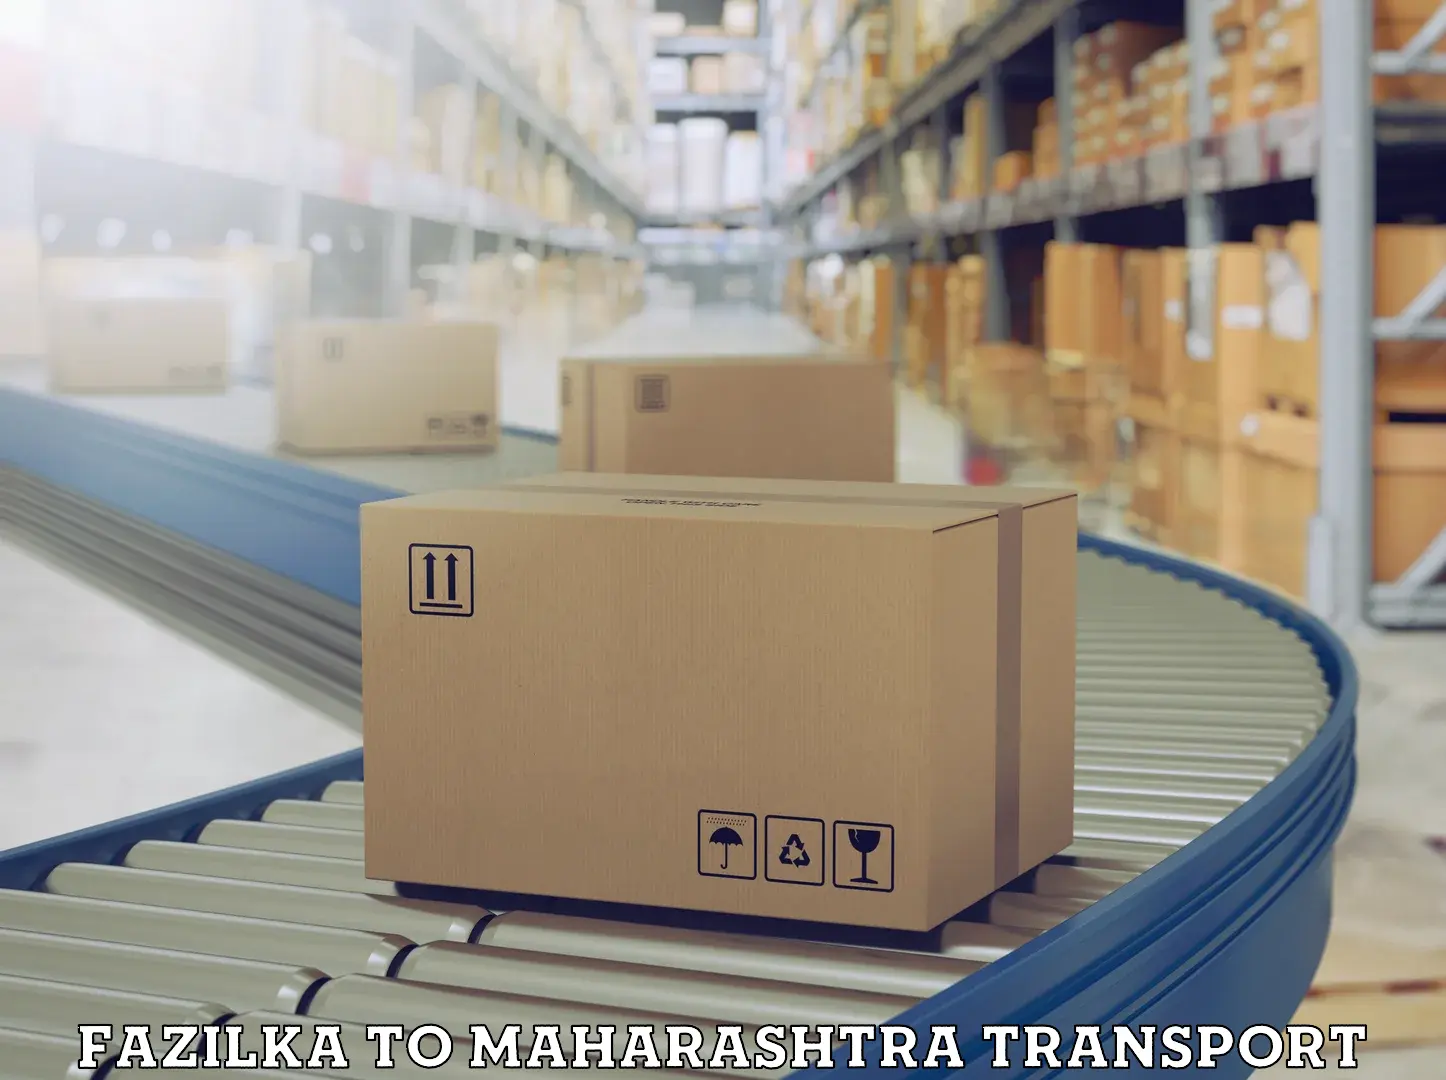 Delivery service Fazilka to Maharashtra